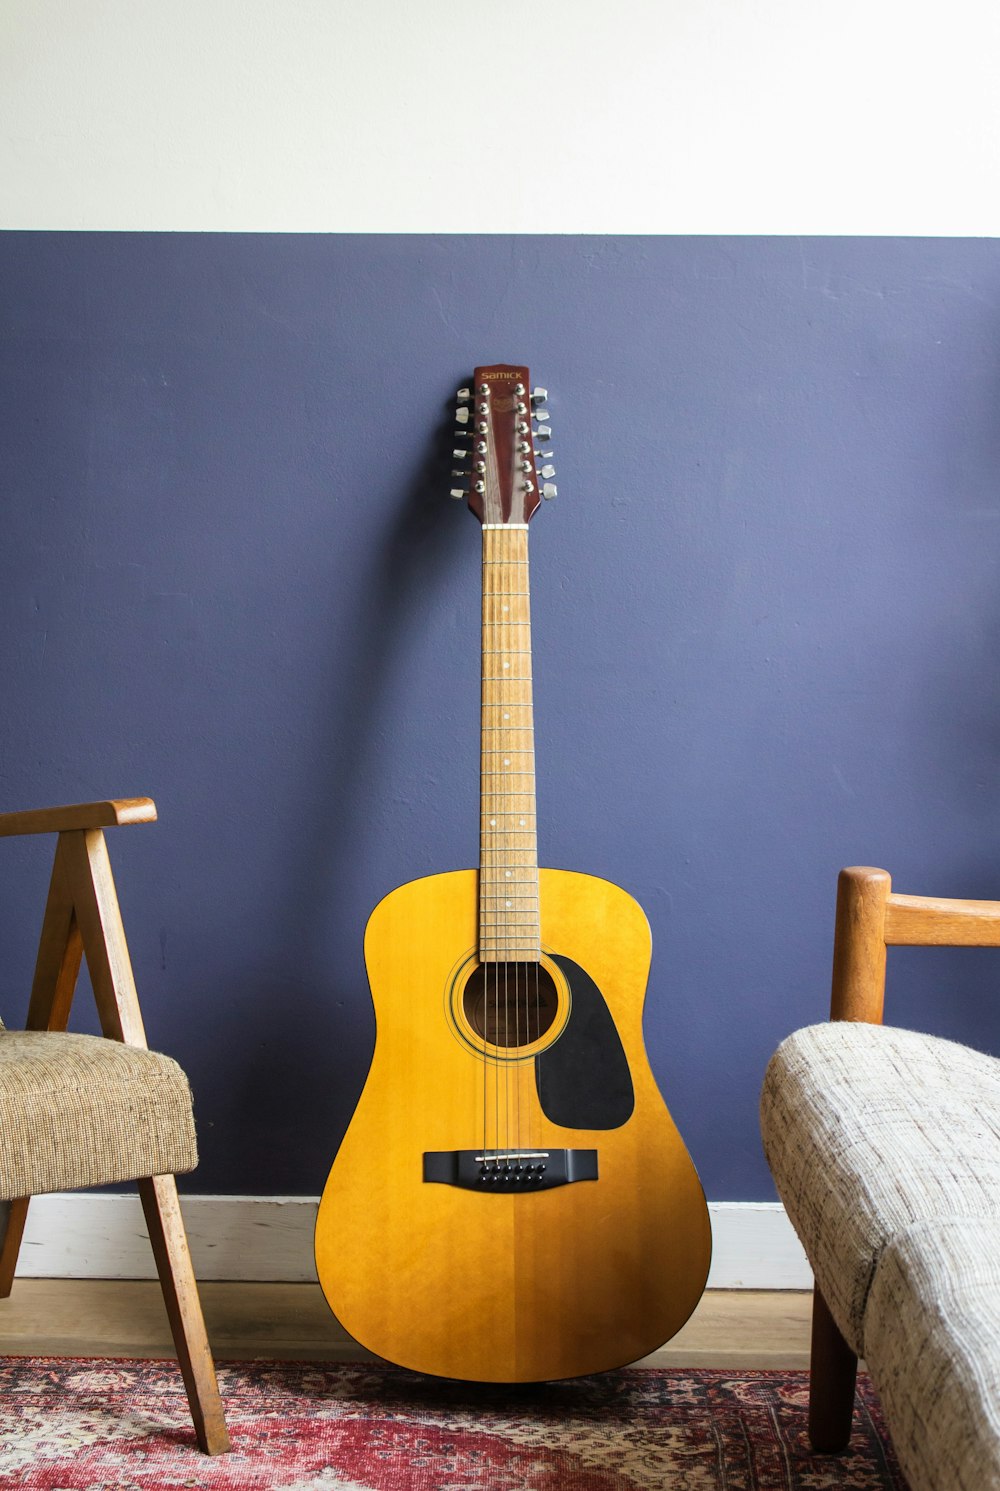 guitare acoustique jaune appuyée sur le mur